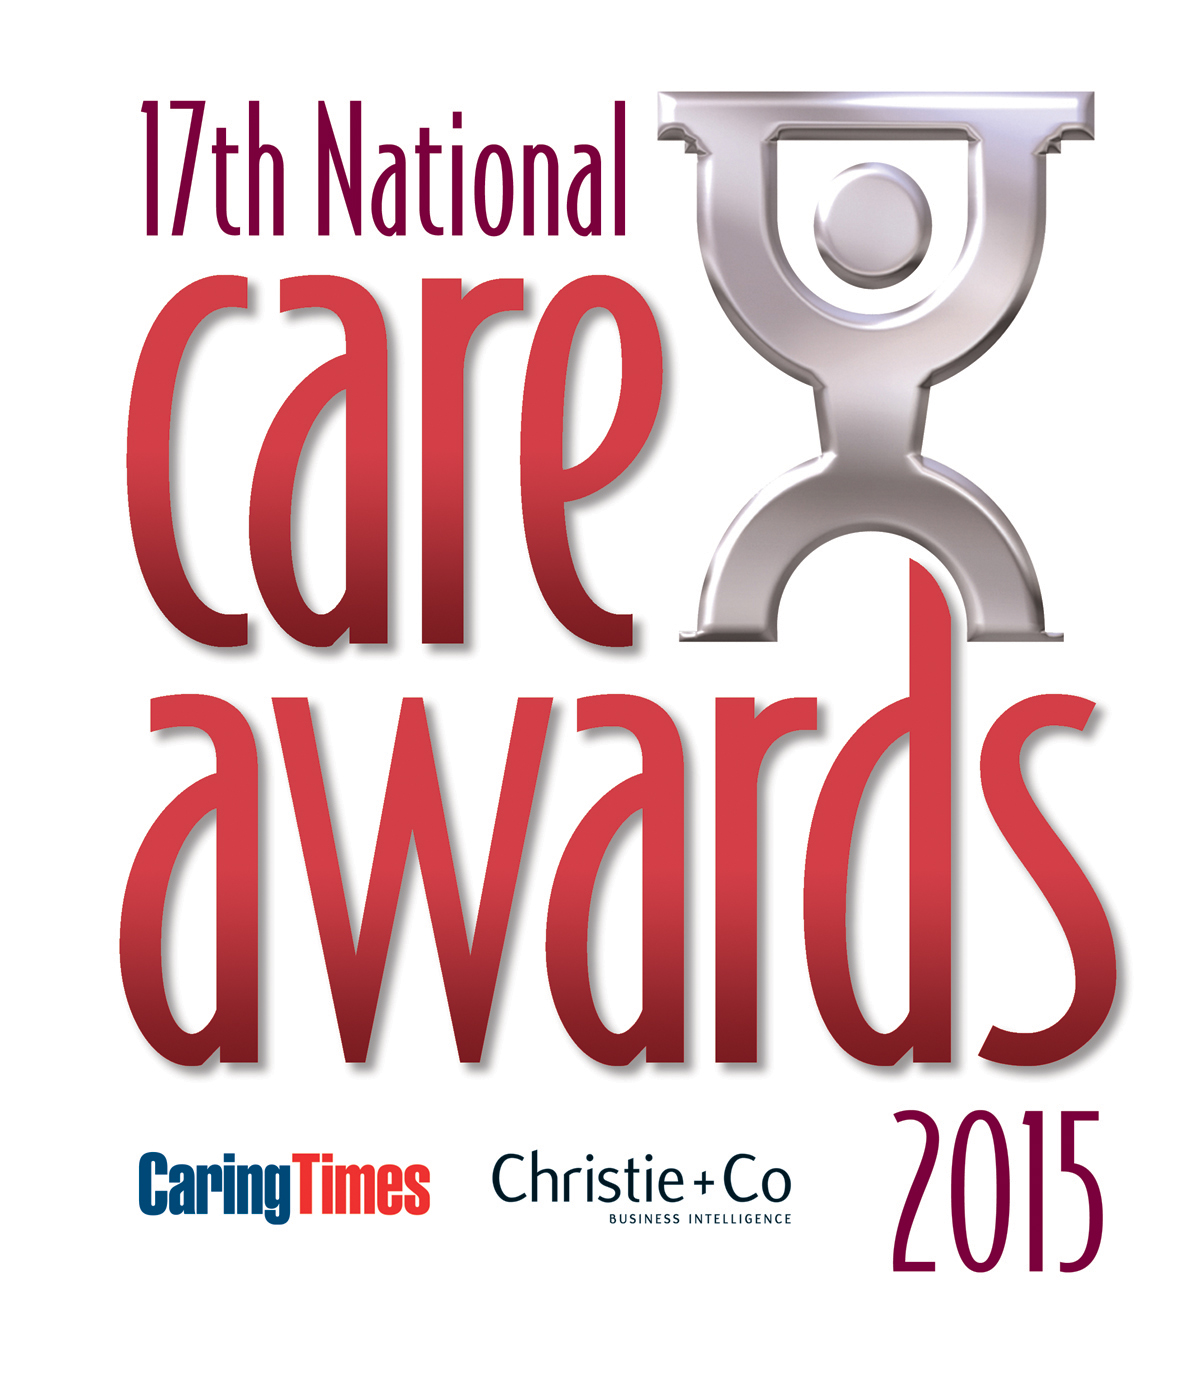 Care Award Winner 2015